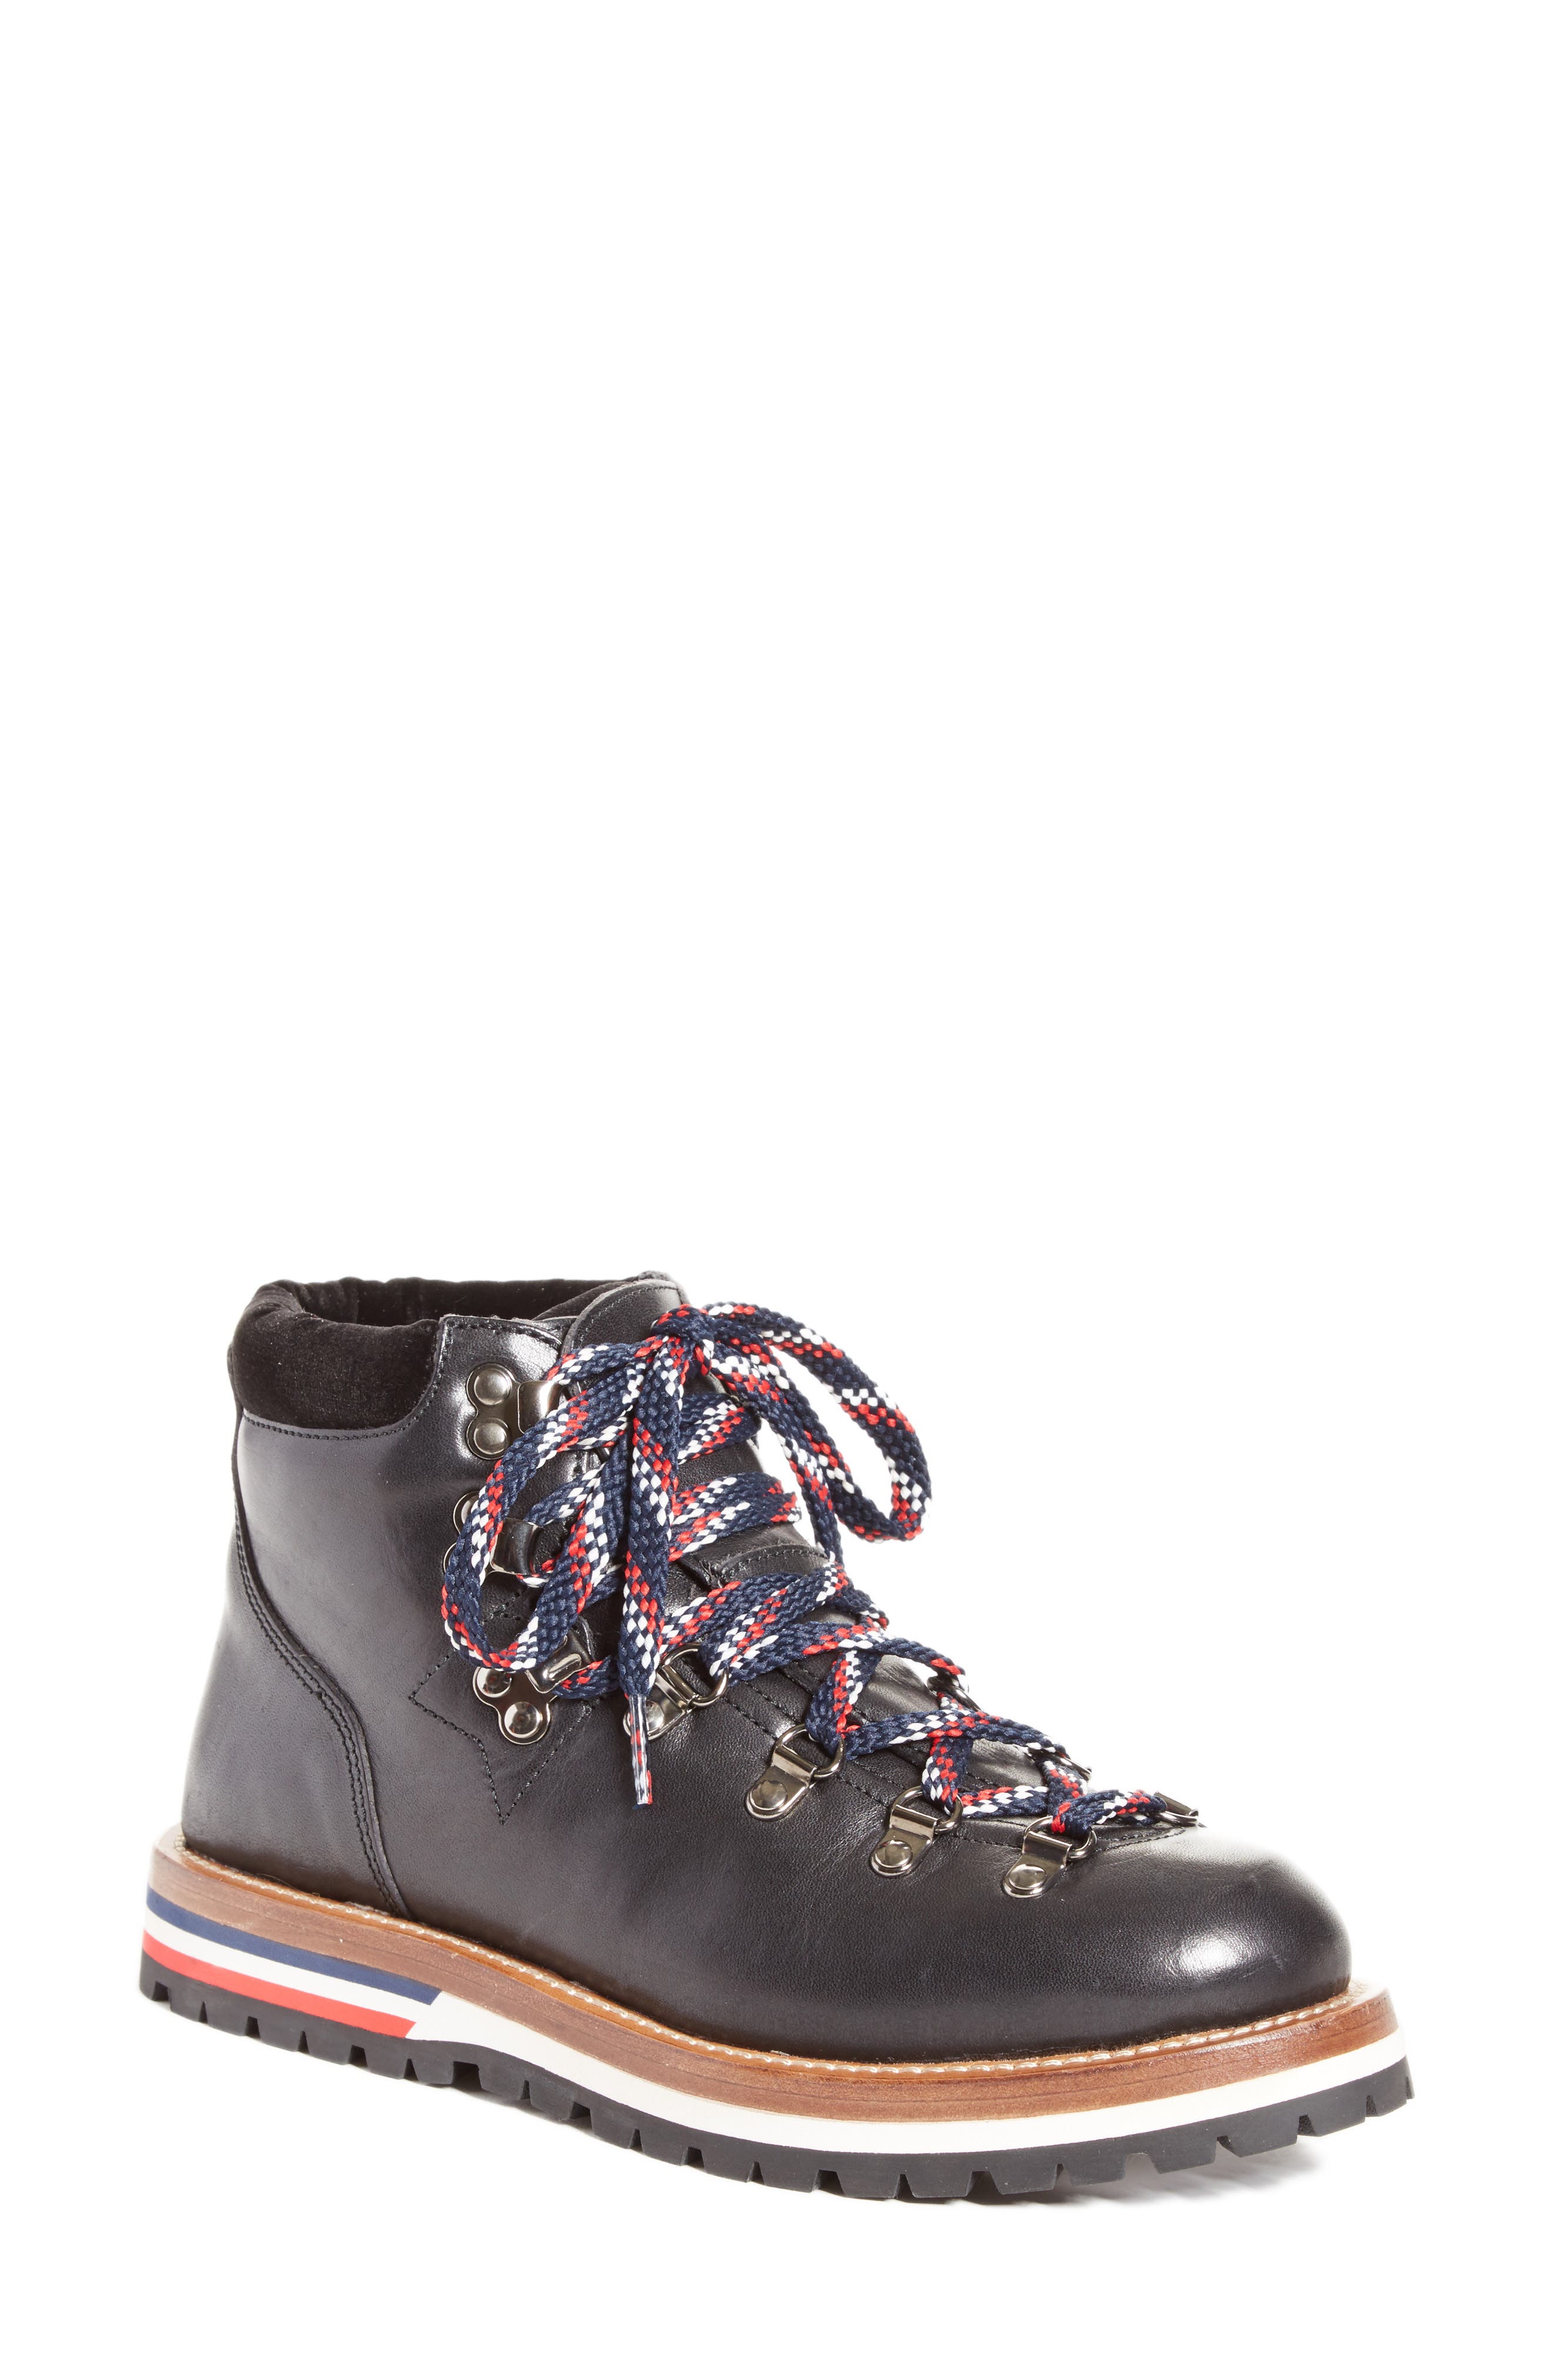 moncler lace up boots